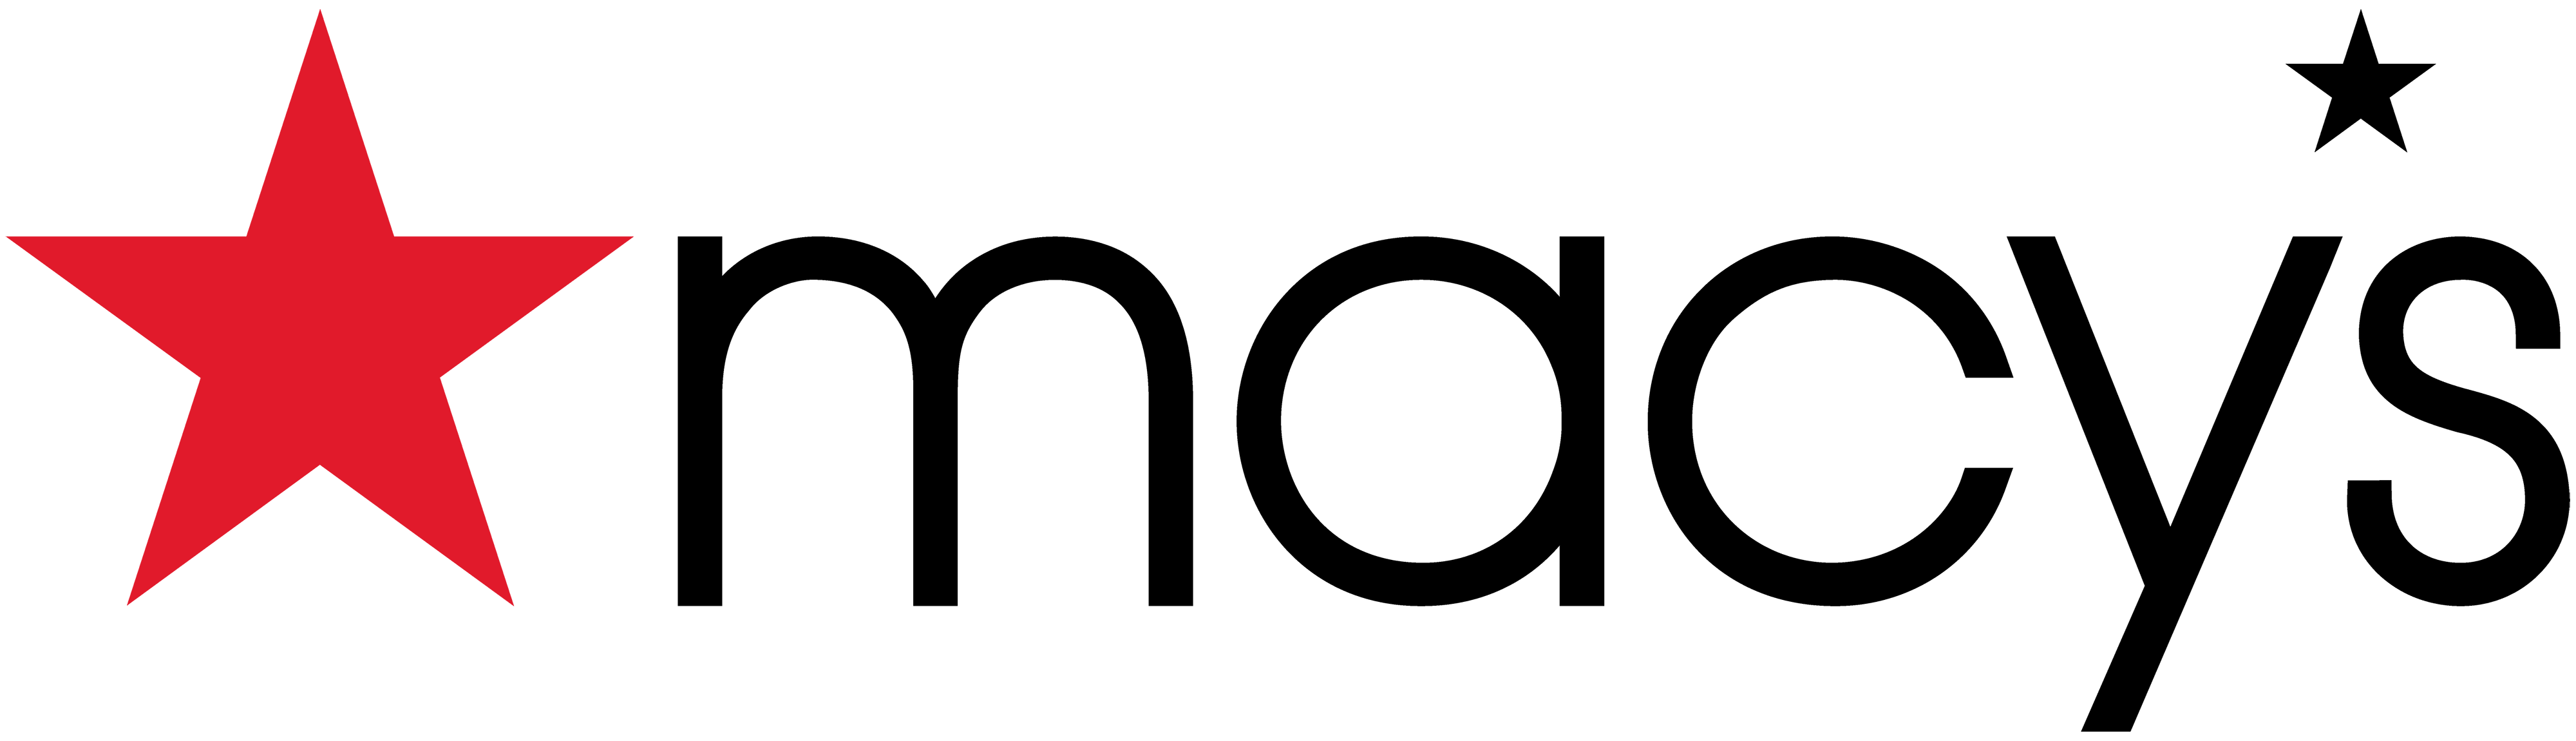 Macy's Standard Logo